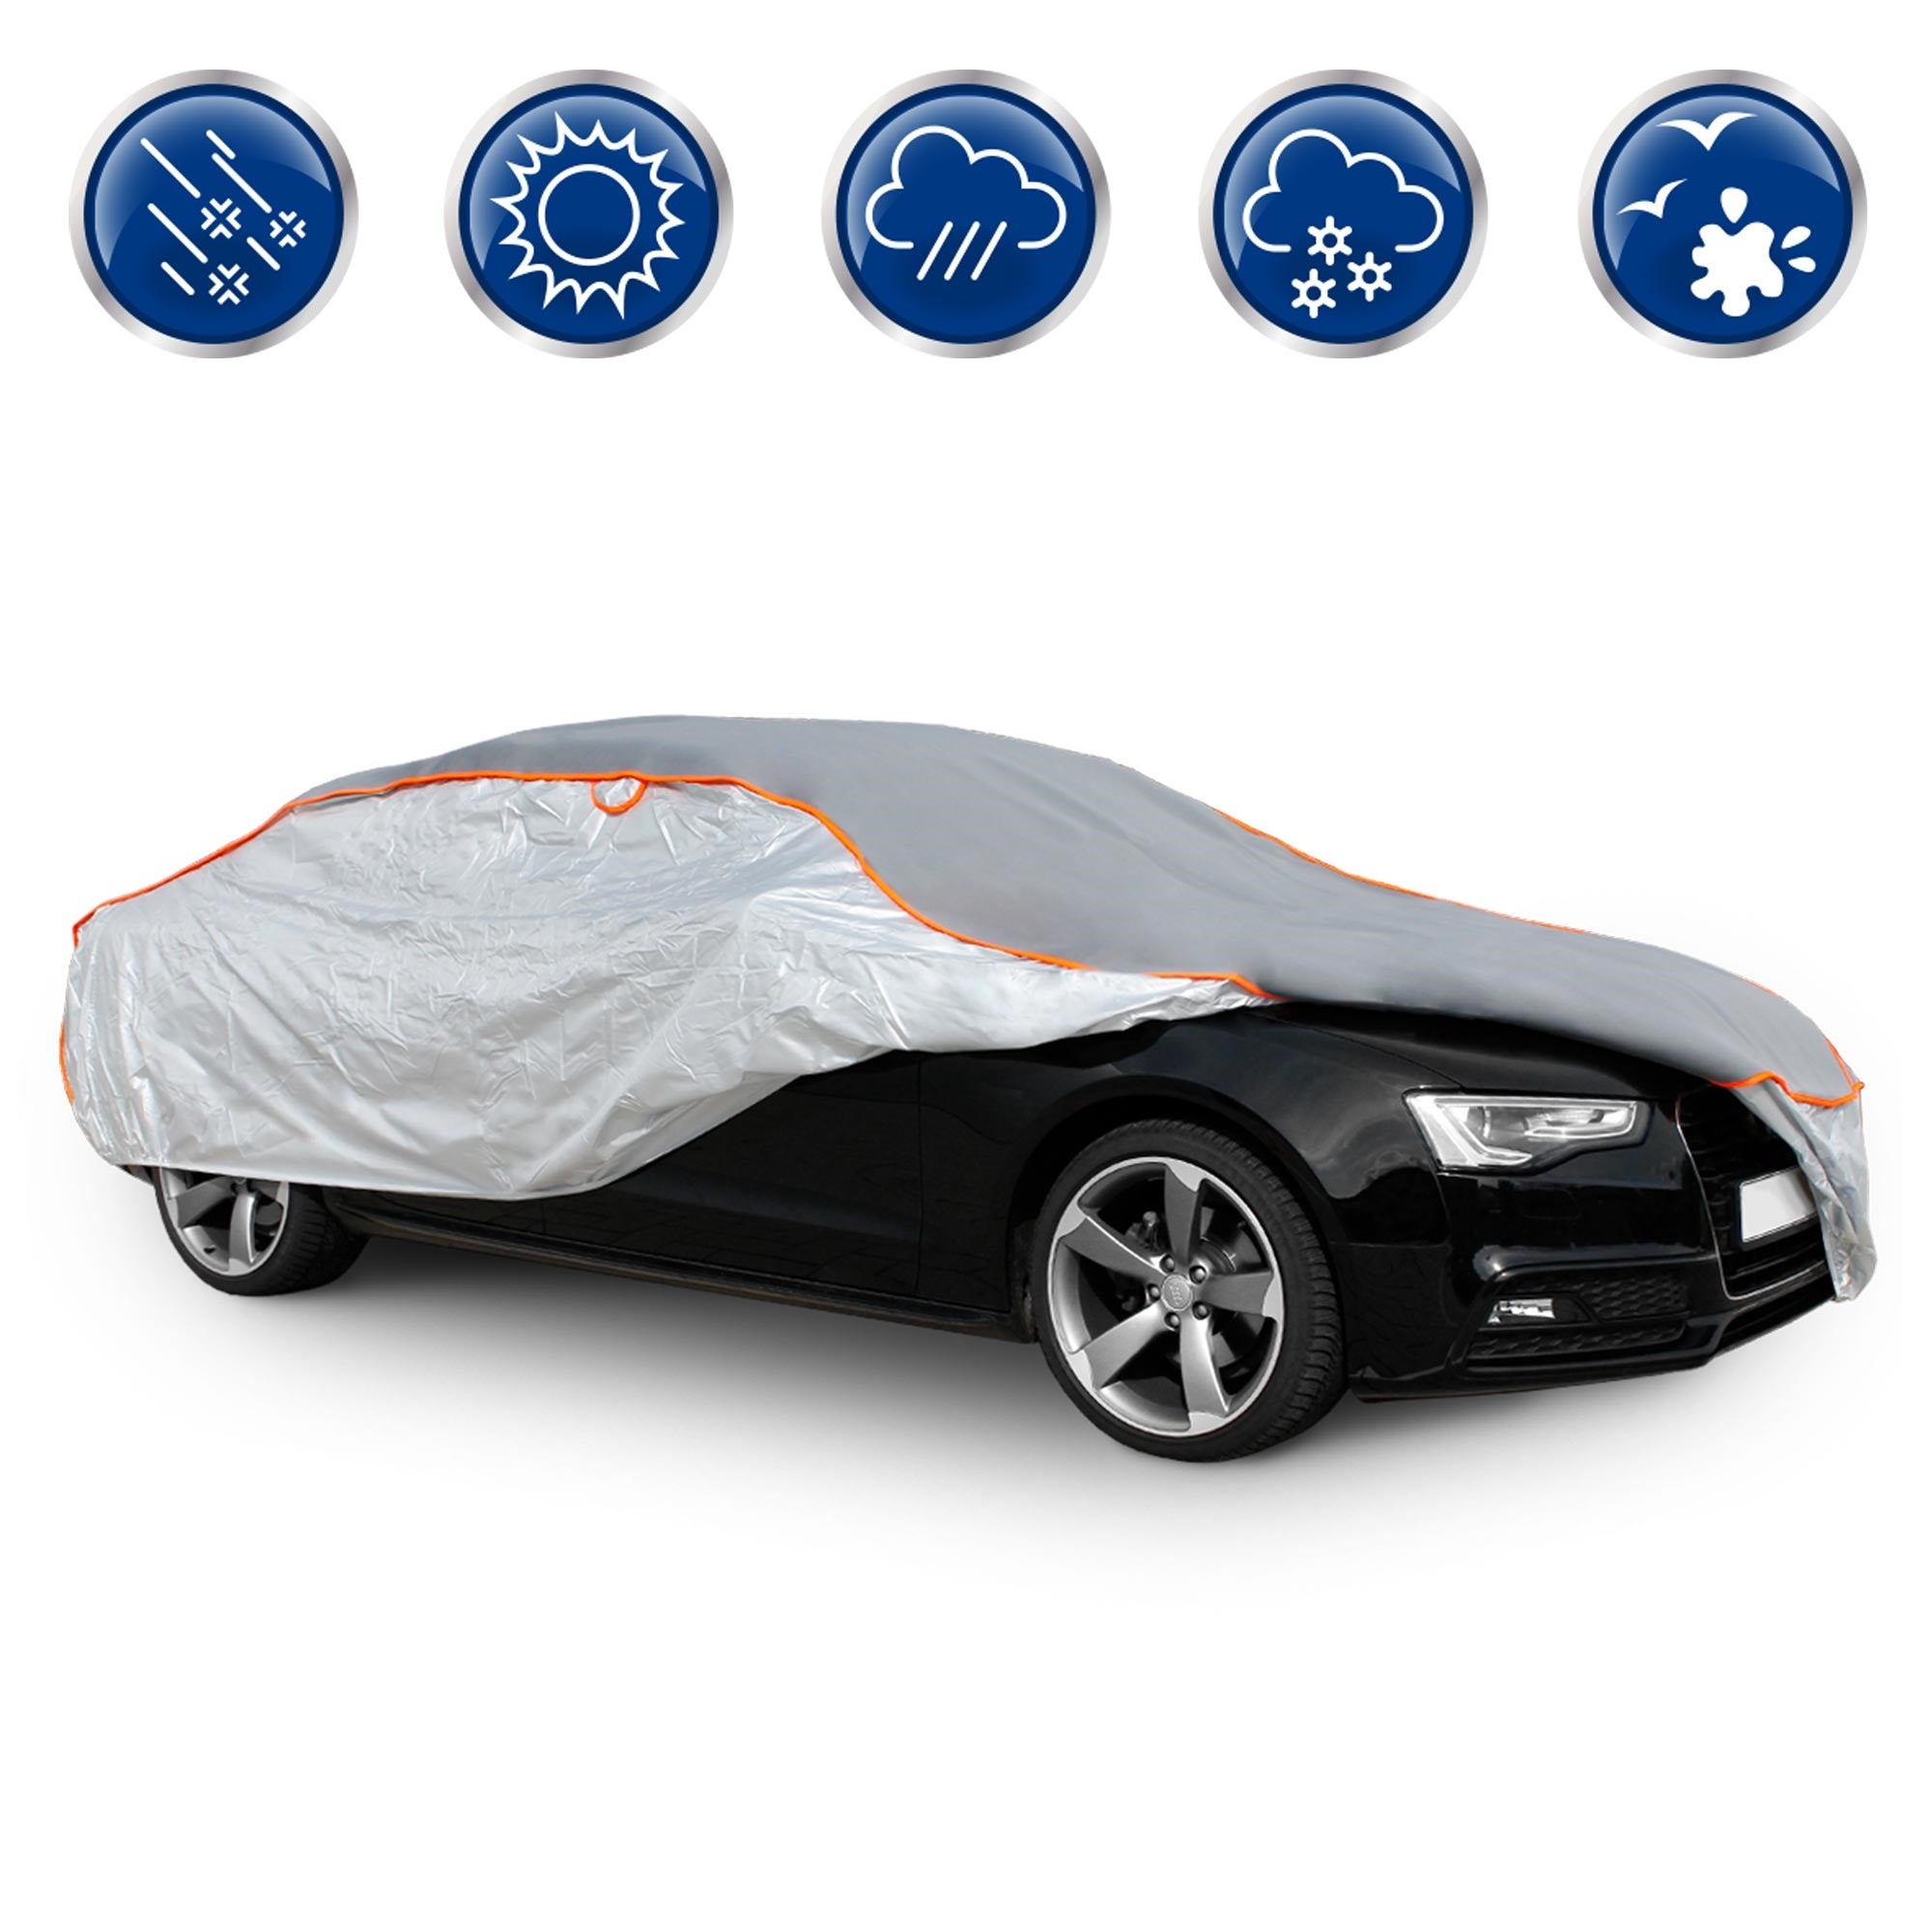  Bâche Voiture Exterieur Anti Grele pour Audi Q2, Bache de  Protection Voiture, Housse Voiture Hiver Étanche Respirante, Personnalisee  Intérieure Extérieure Tout Temps (Color : 1, Size : Single Layer